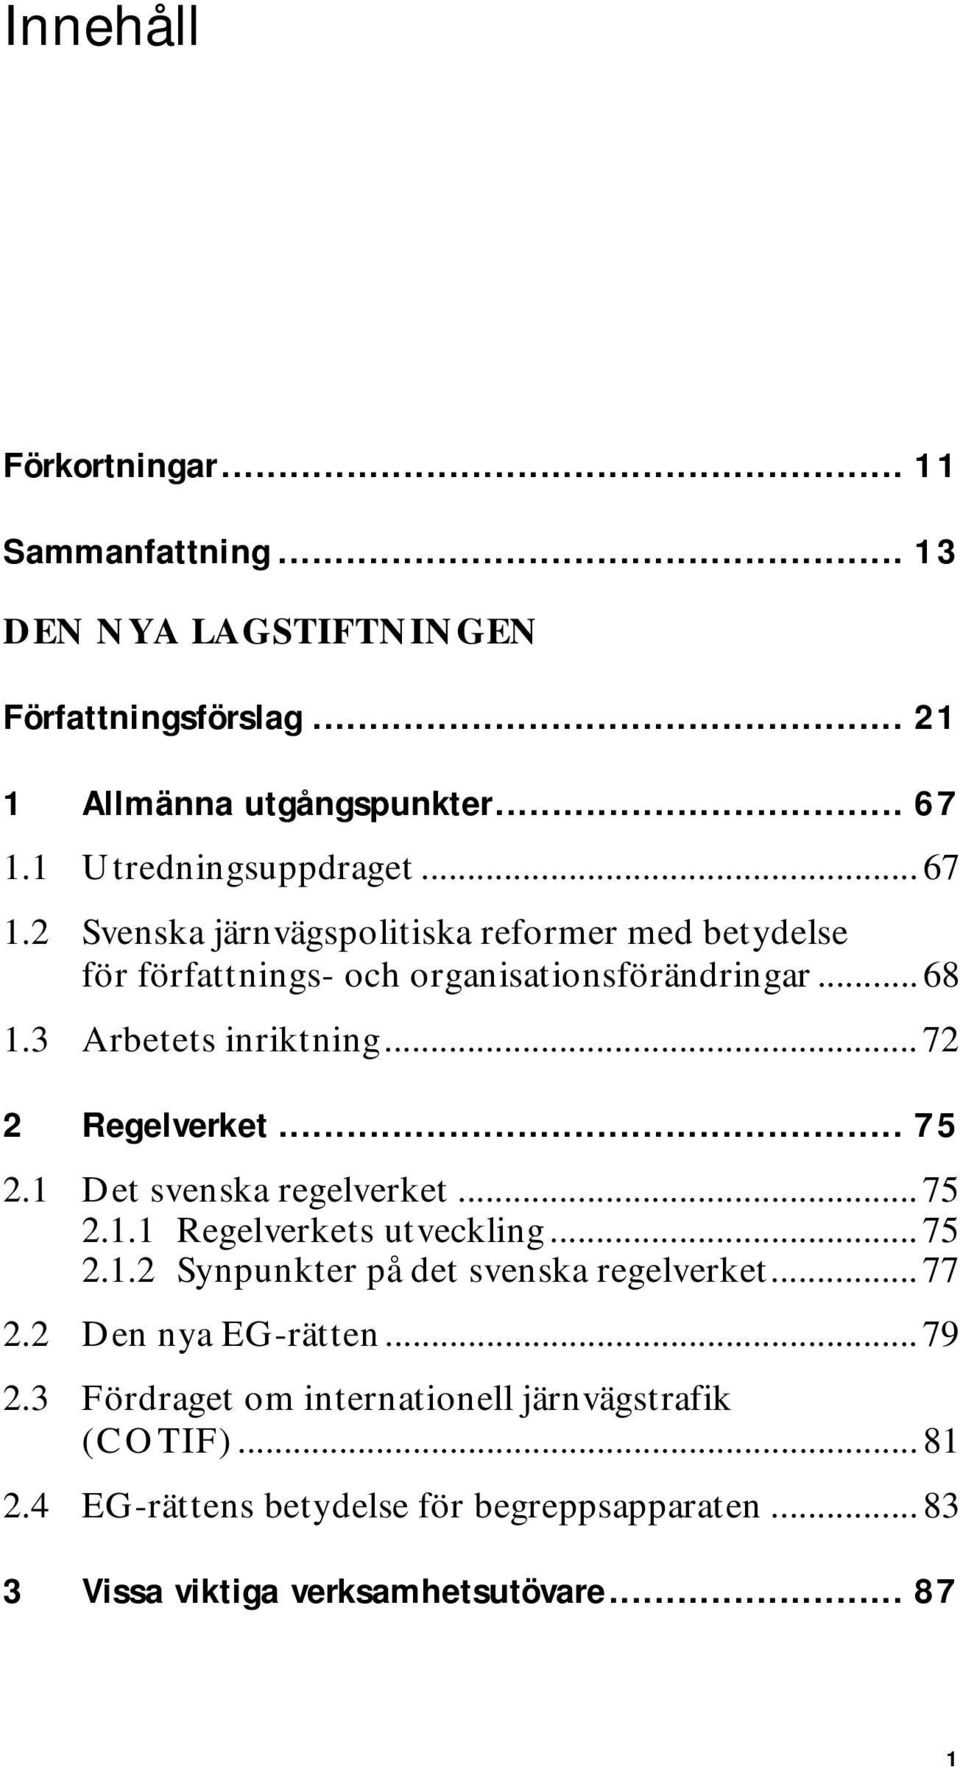 .. 75 2.1 Det svenska regelverket... 75 2.1.1 Regelverkets utveckling... 75 2.1.2 Synpunkter på det svenska regelverket... 77 2.2 Den nya EG-rätten... 79 2.